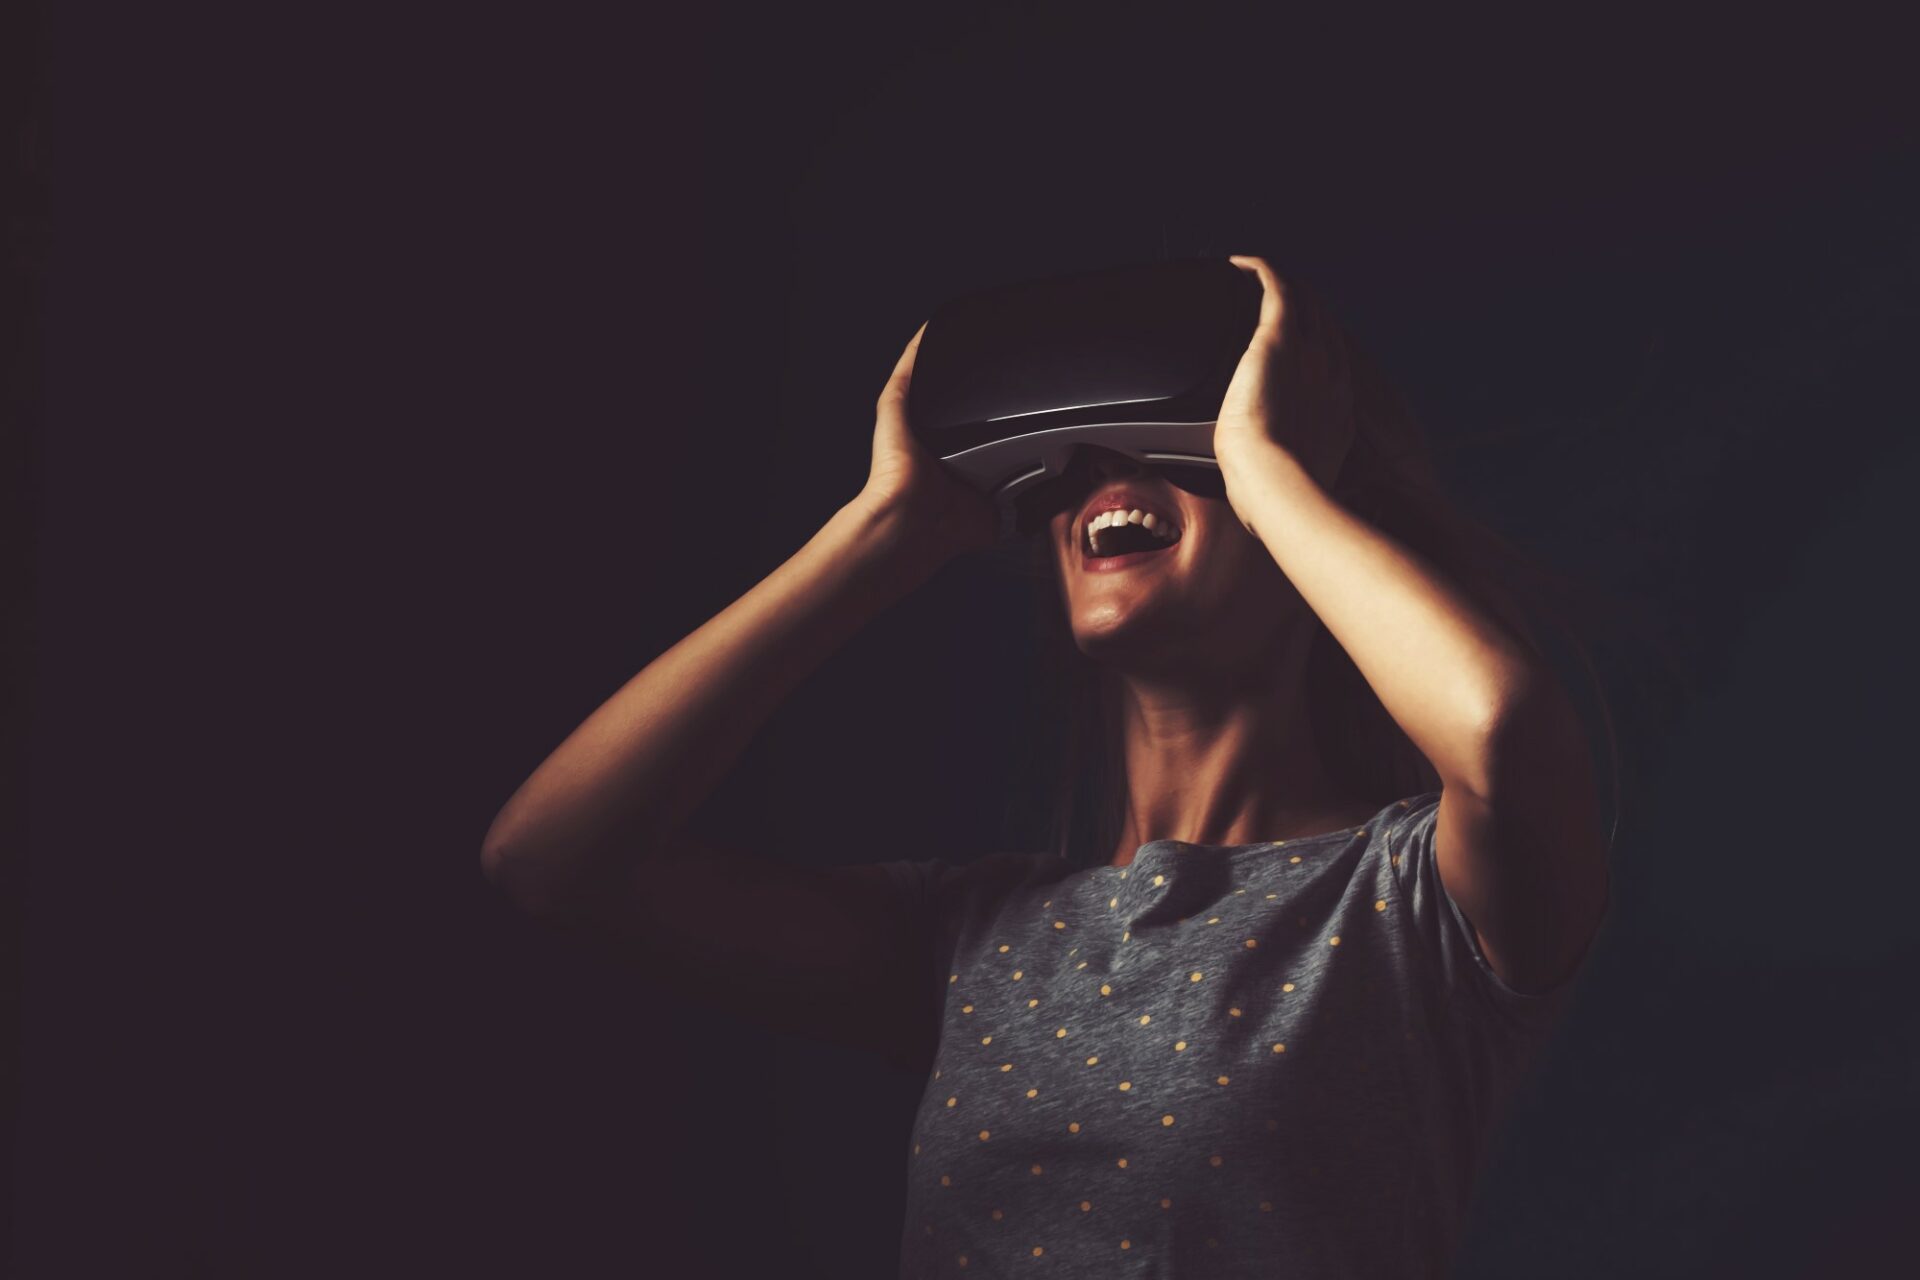 Virtuell oder erweitert: Die Realität, die uns umgibt, bekommt neue Gesichte